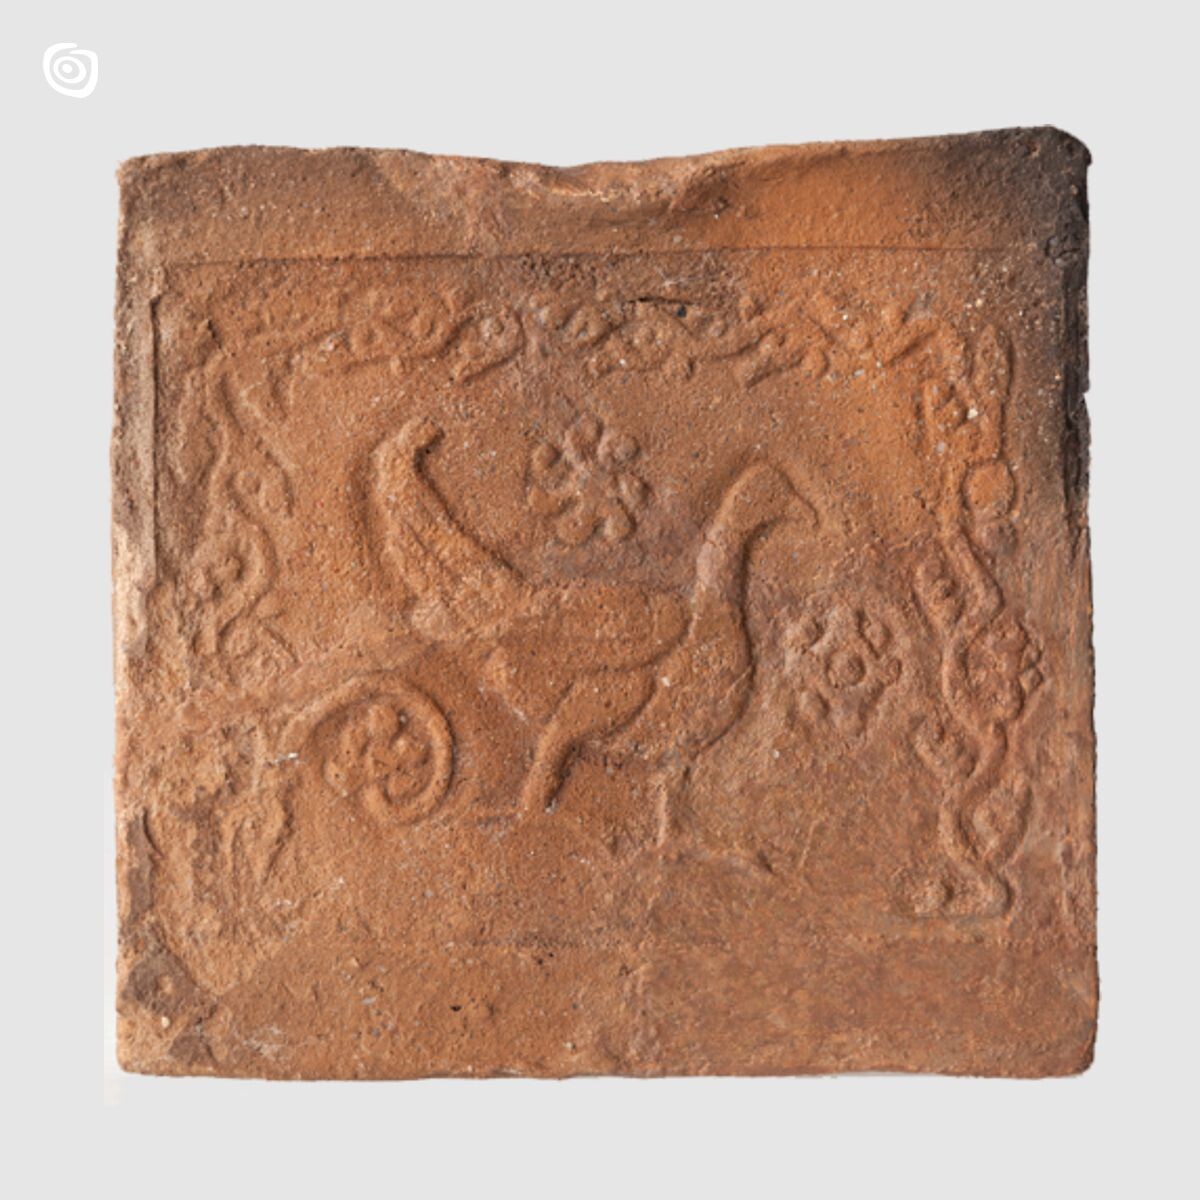 Płytka ceramiczna-Ptak, Gniezno, wczesne średniowiecze